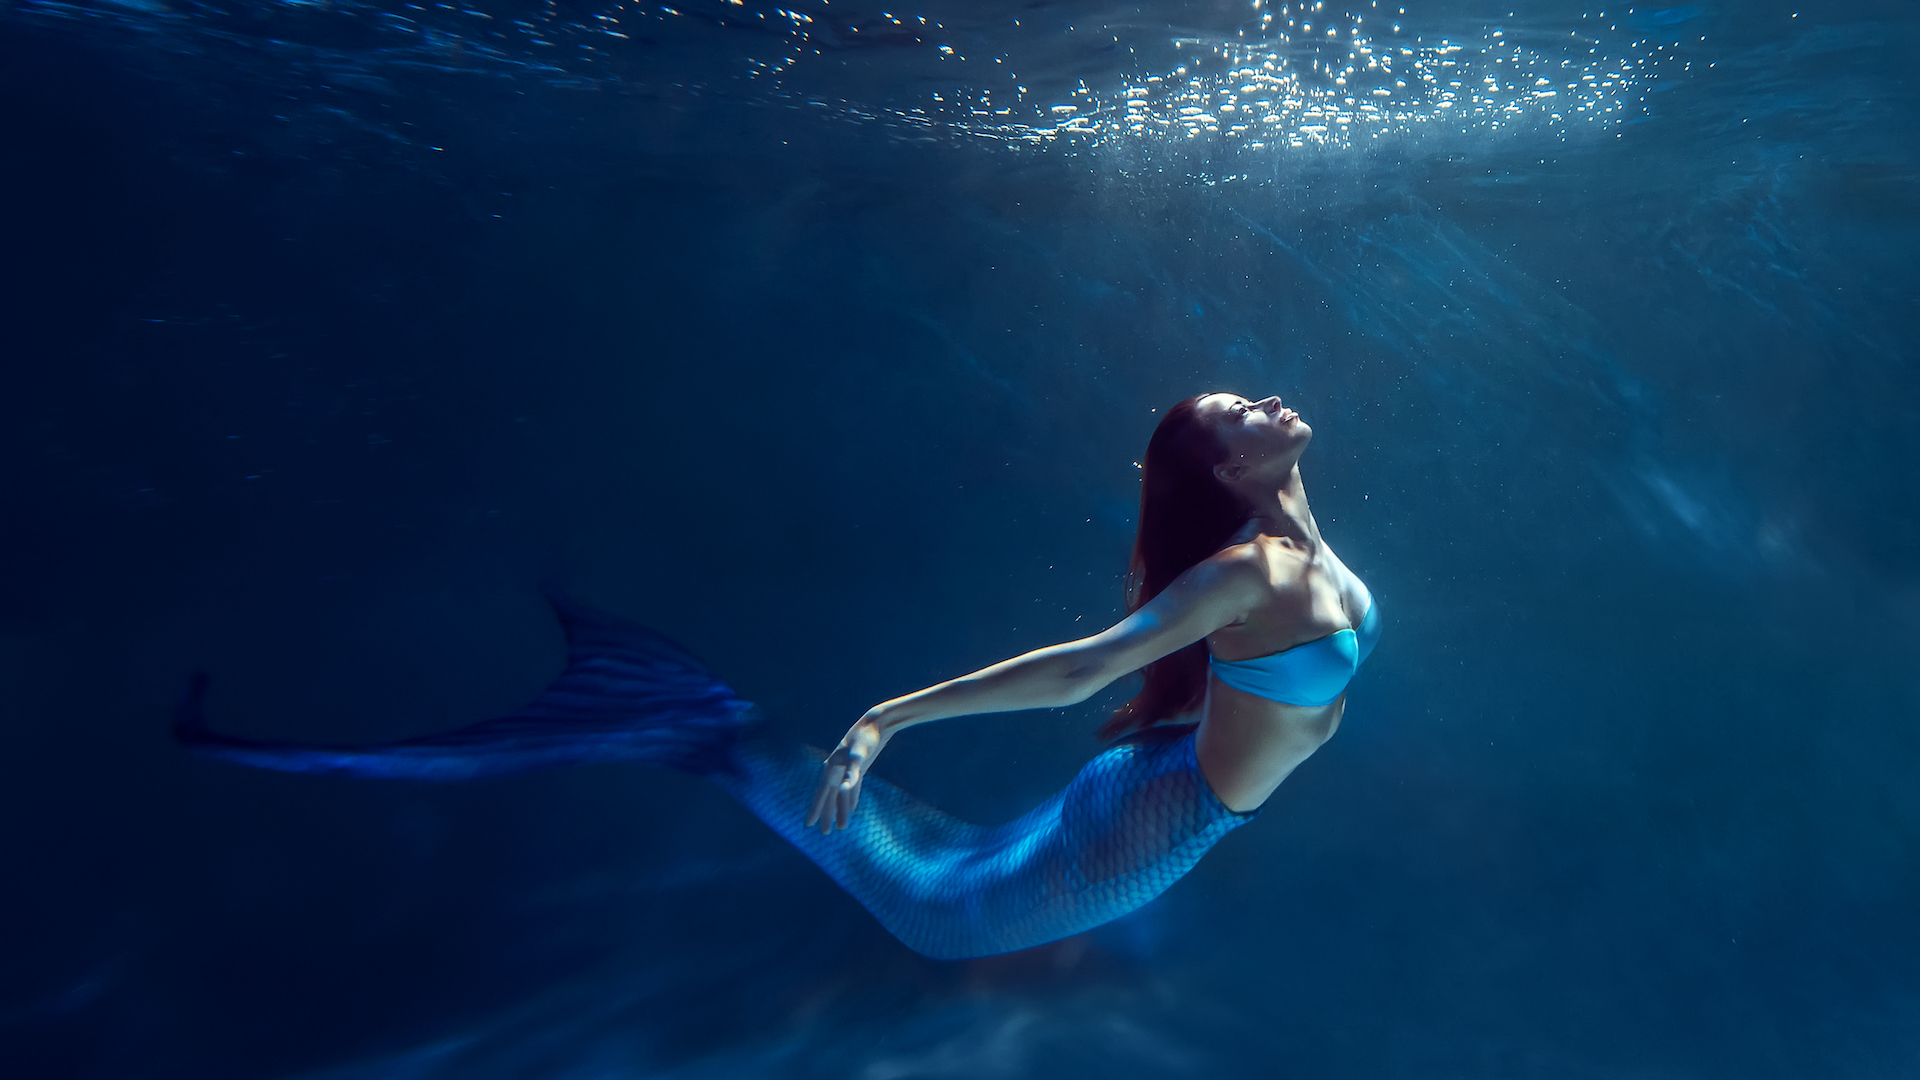 A mermaid swimming in the ocean 